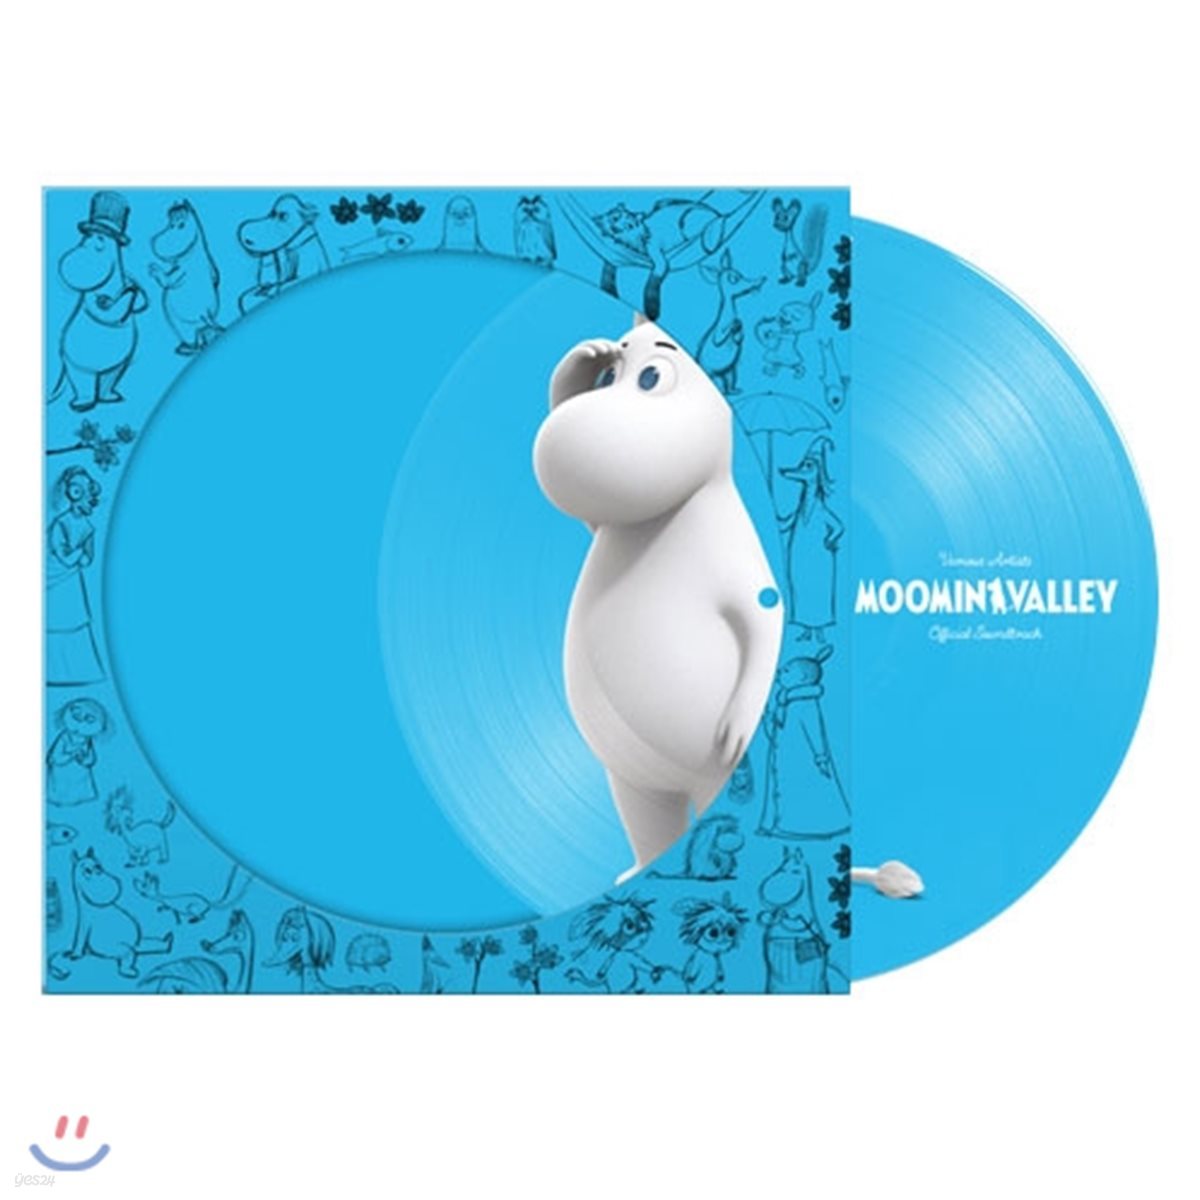 무민 밸리 애니메이션 음악 (Moominvalley OST) [무민트롤 픽쳐 디스크 LP]